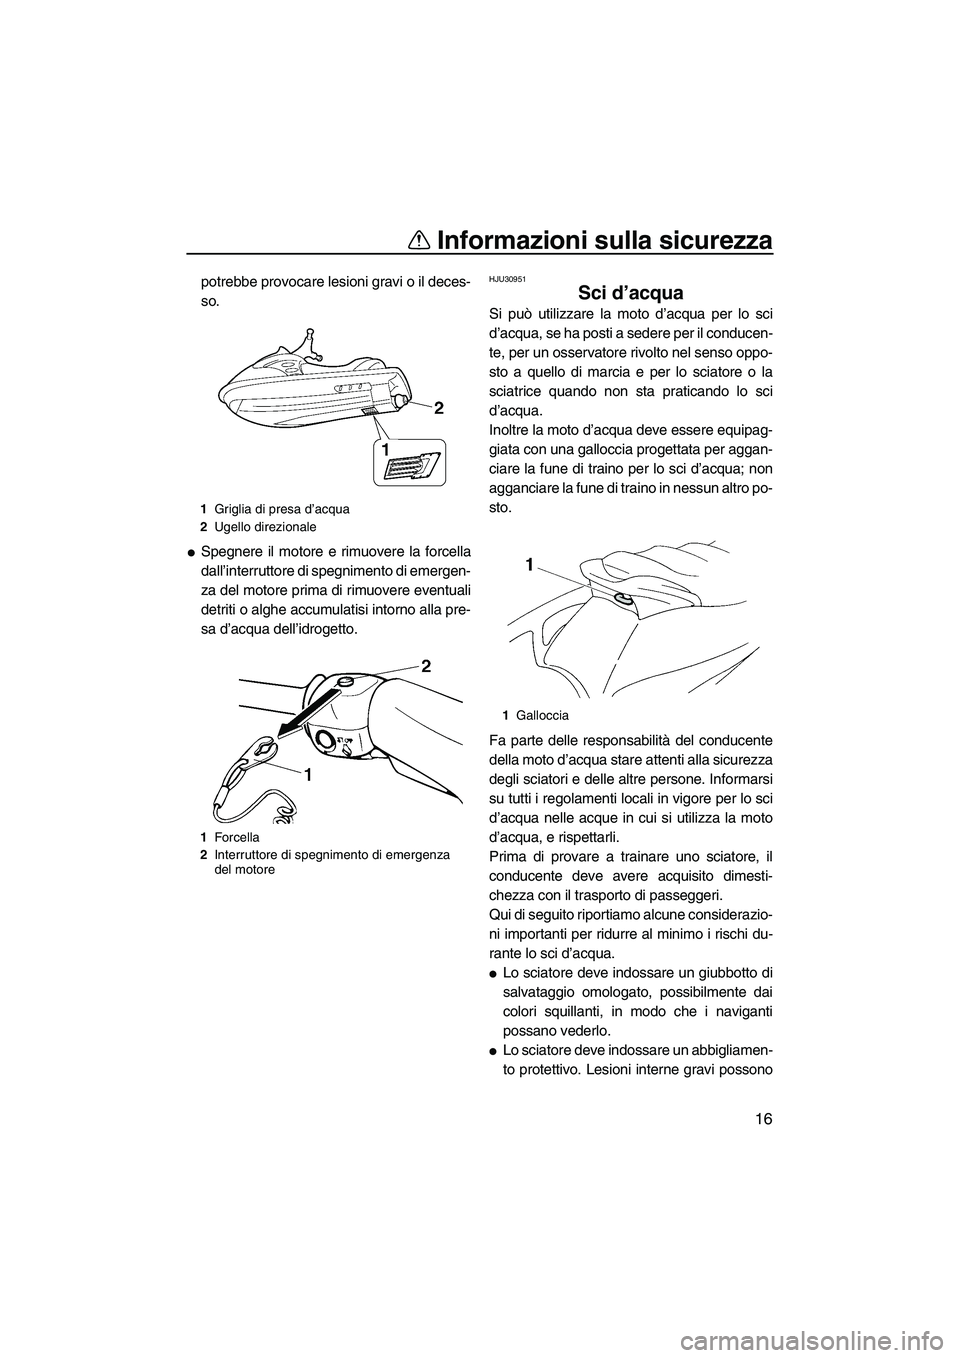 YAMAHA VX 2009  Manuale duso (in Italian) Informazioni sulla sicurezza
16
potrebbe provocare lesioni gravi o il deces-
so.
Spegnere il motore e rimuovere la forcella
dall’interruttore di spegnimento di emergen-
za del motore prima di rimuo